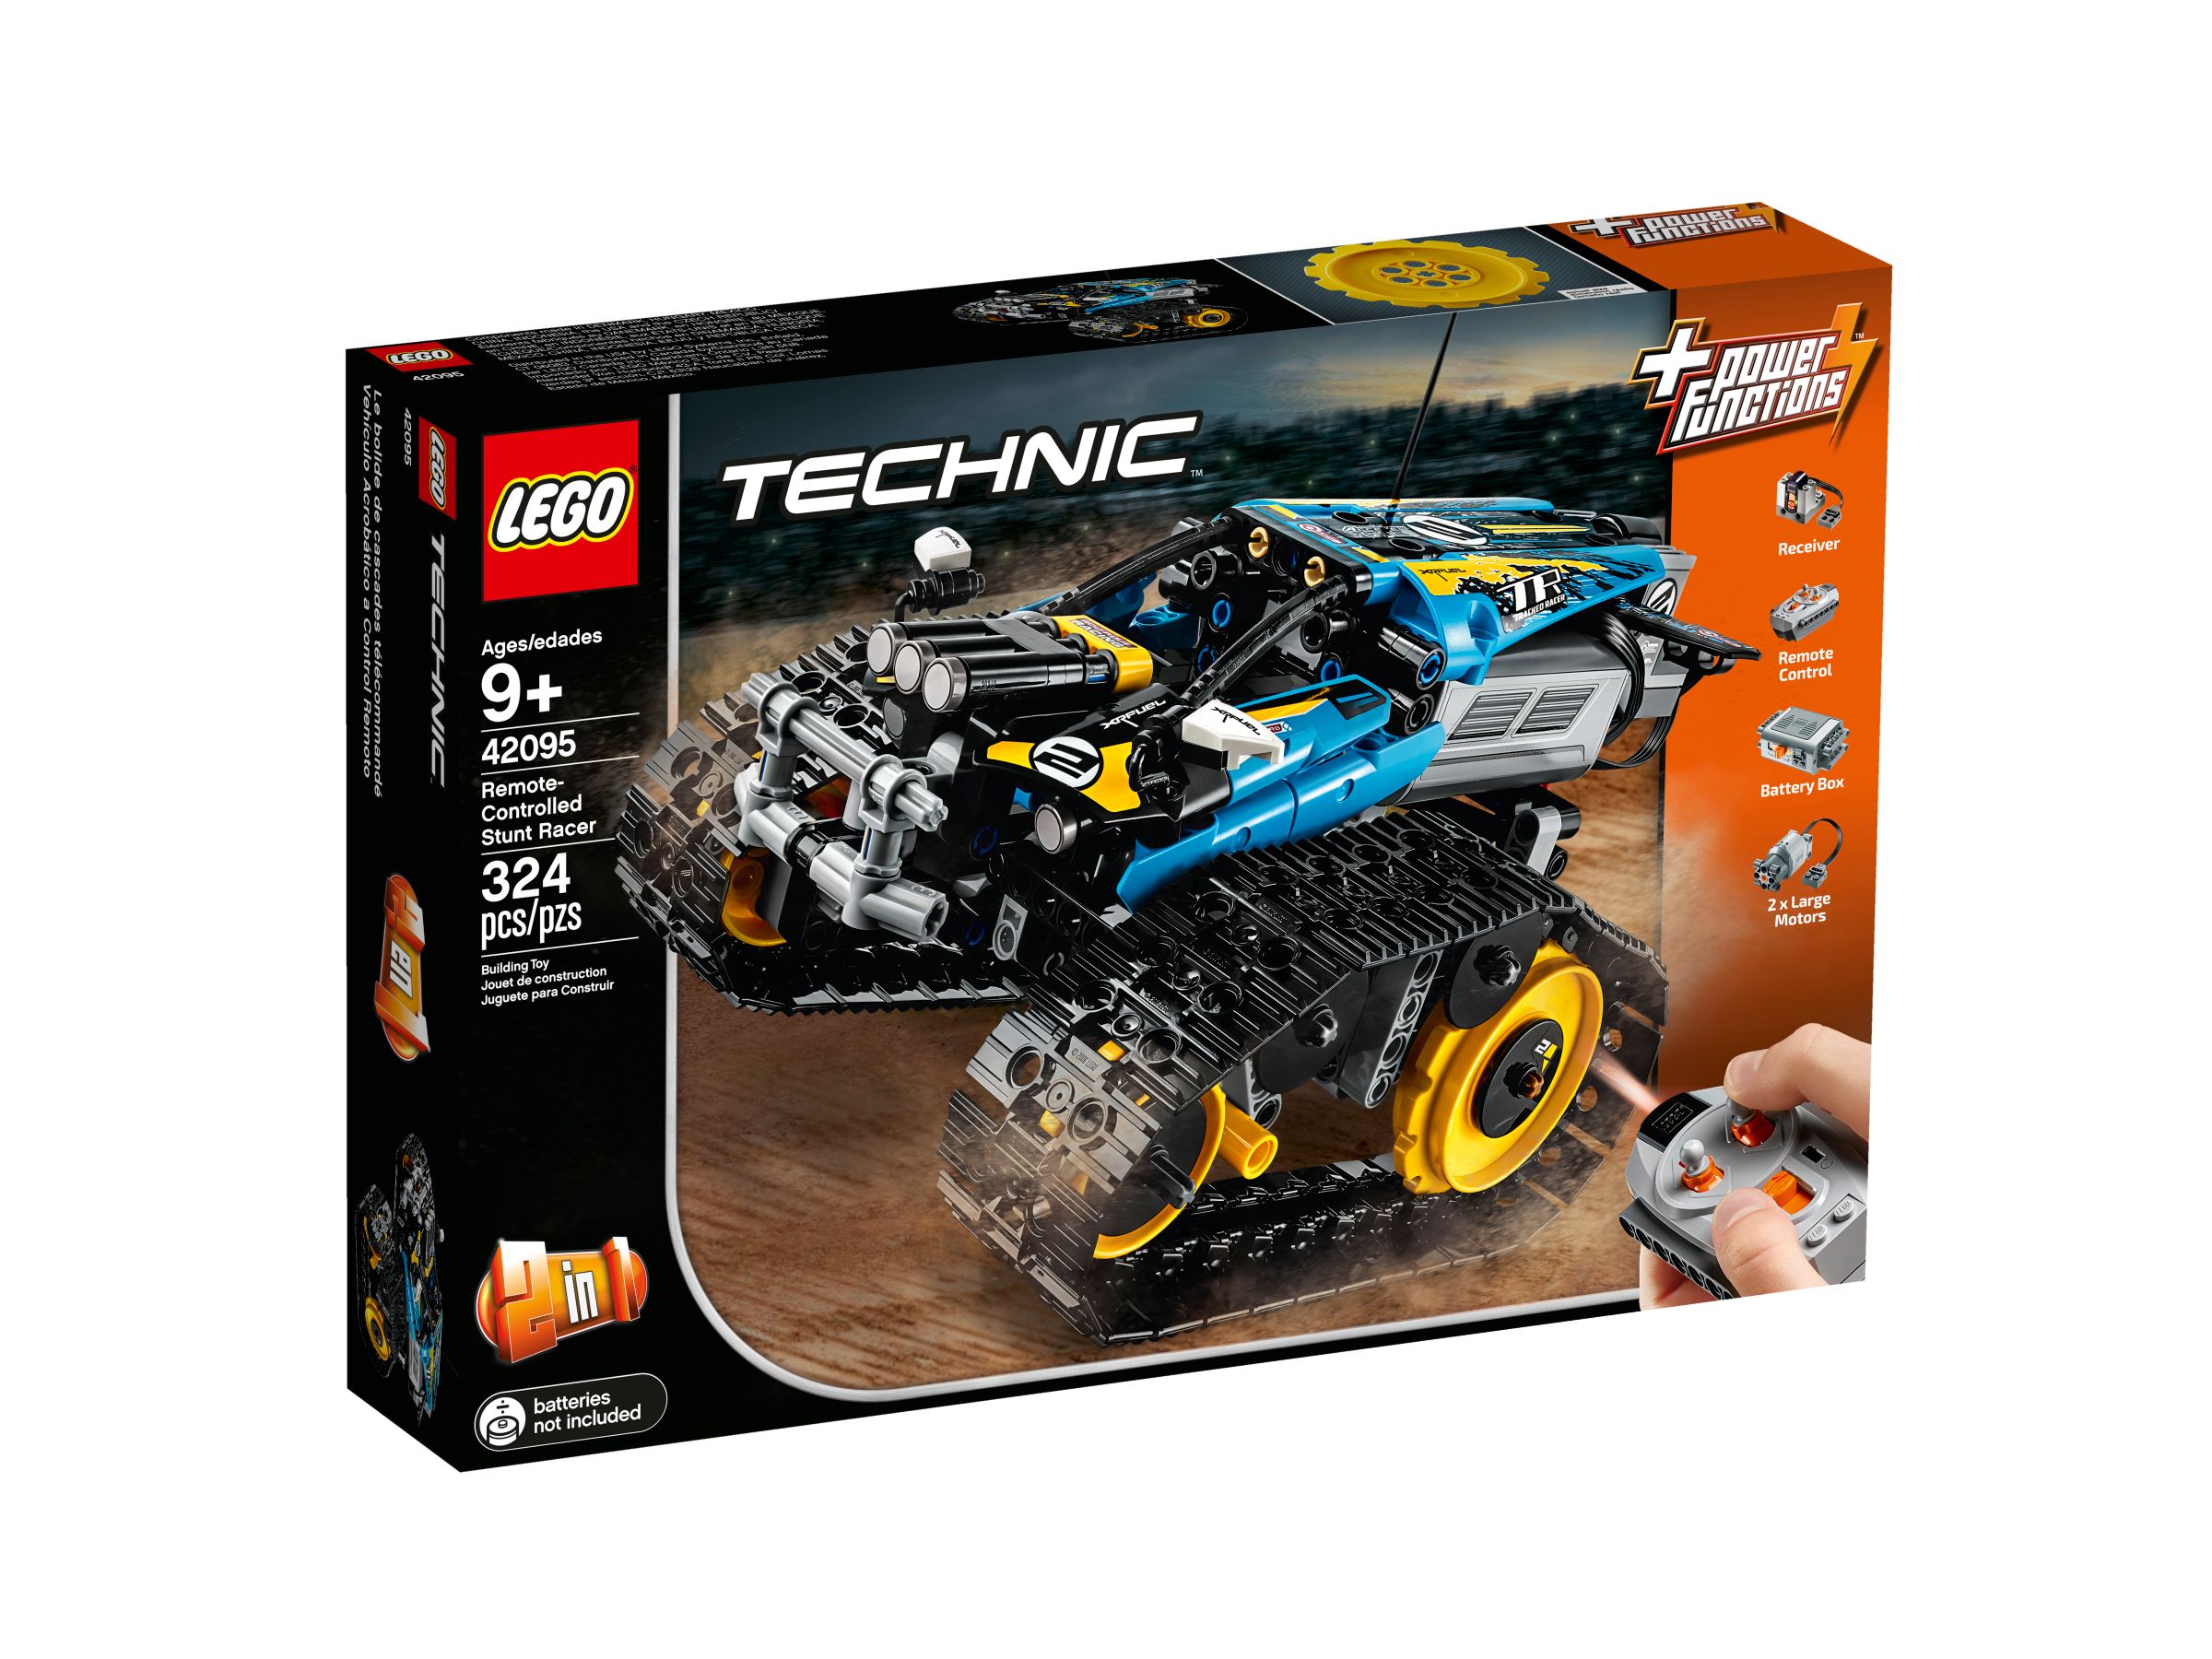 LEGO Technic 42095 Ferngesteuerter Stunt-Racer LEGO_42095_alt1.jpg